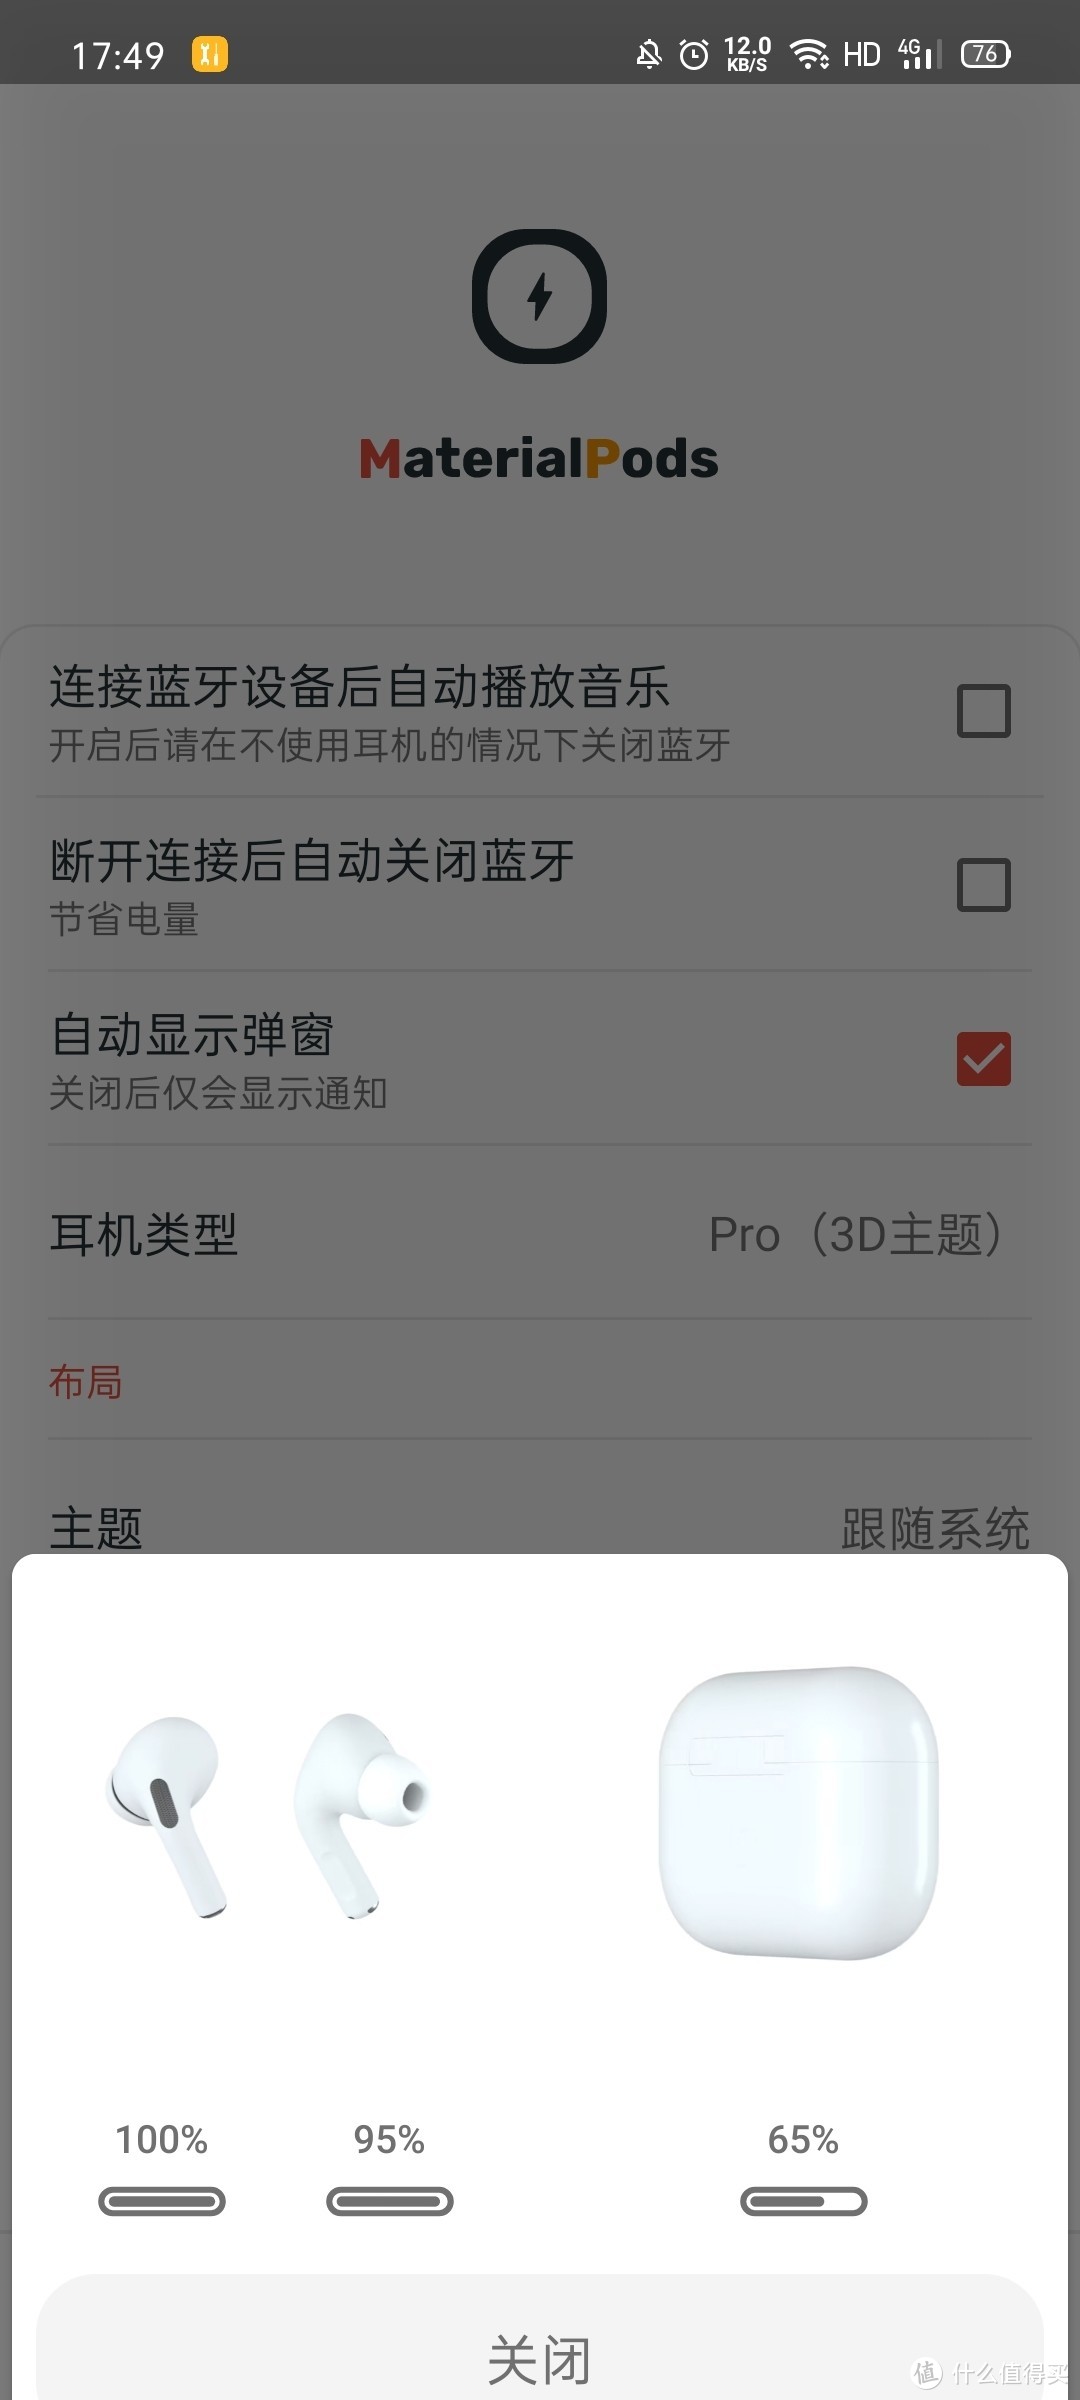 不用iOS也能给AirpodsPro升级?---安卓用户入手一月简评。